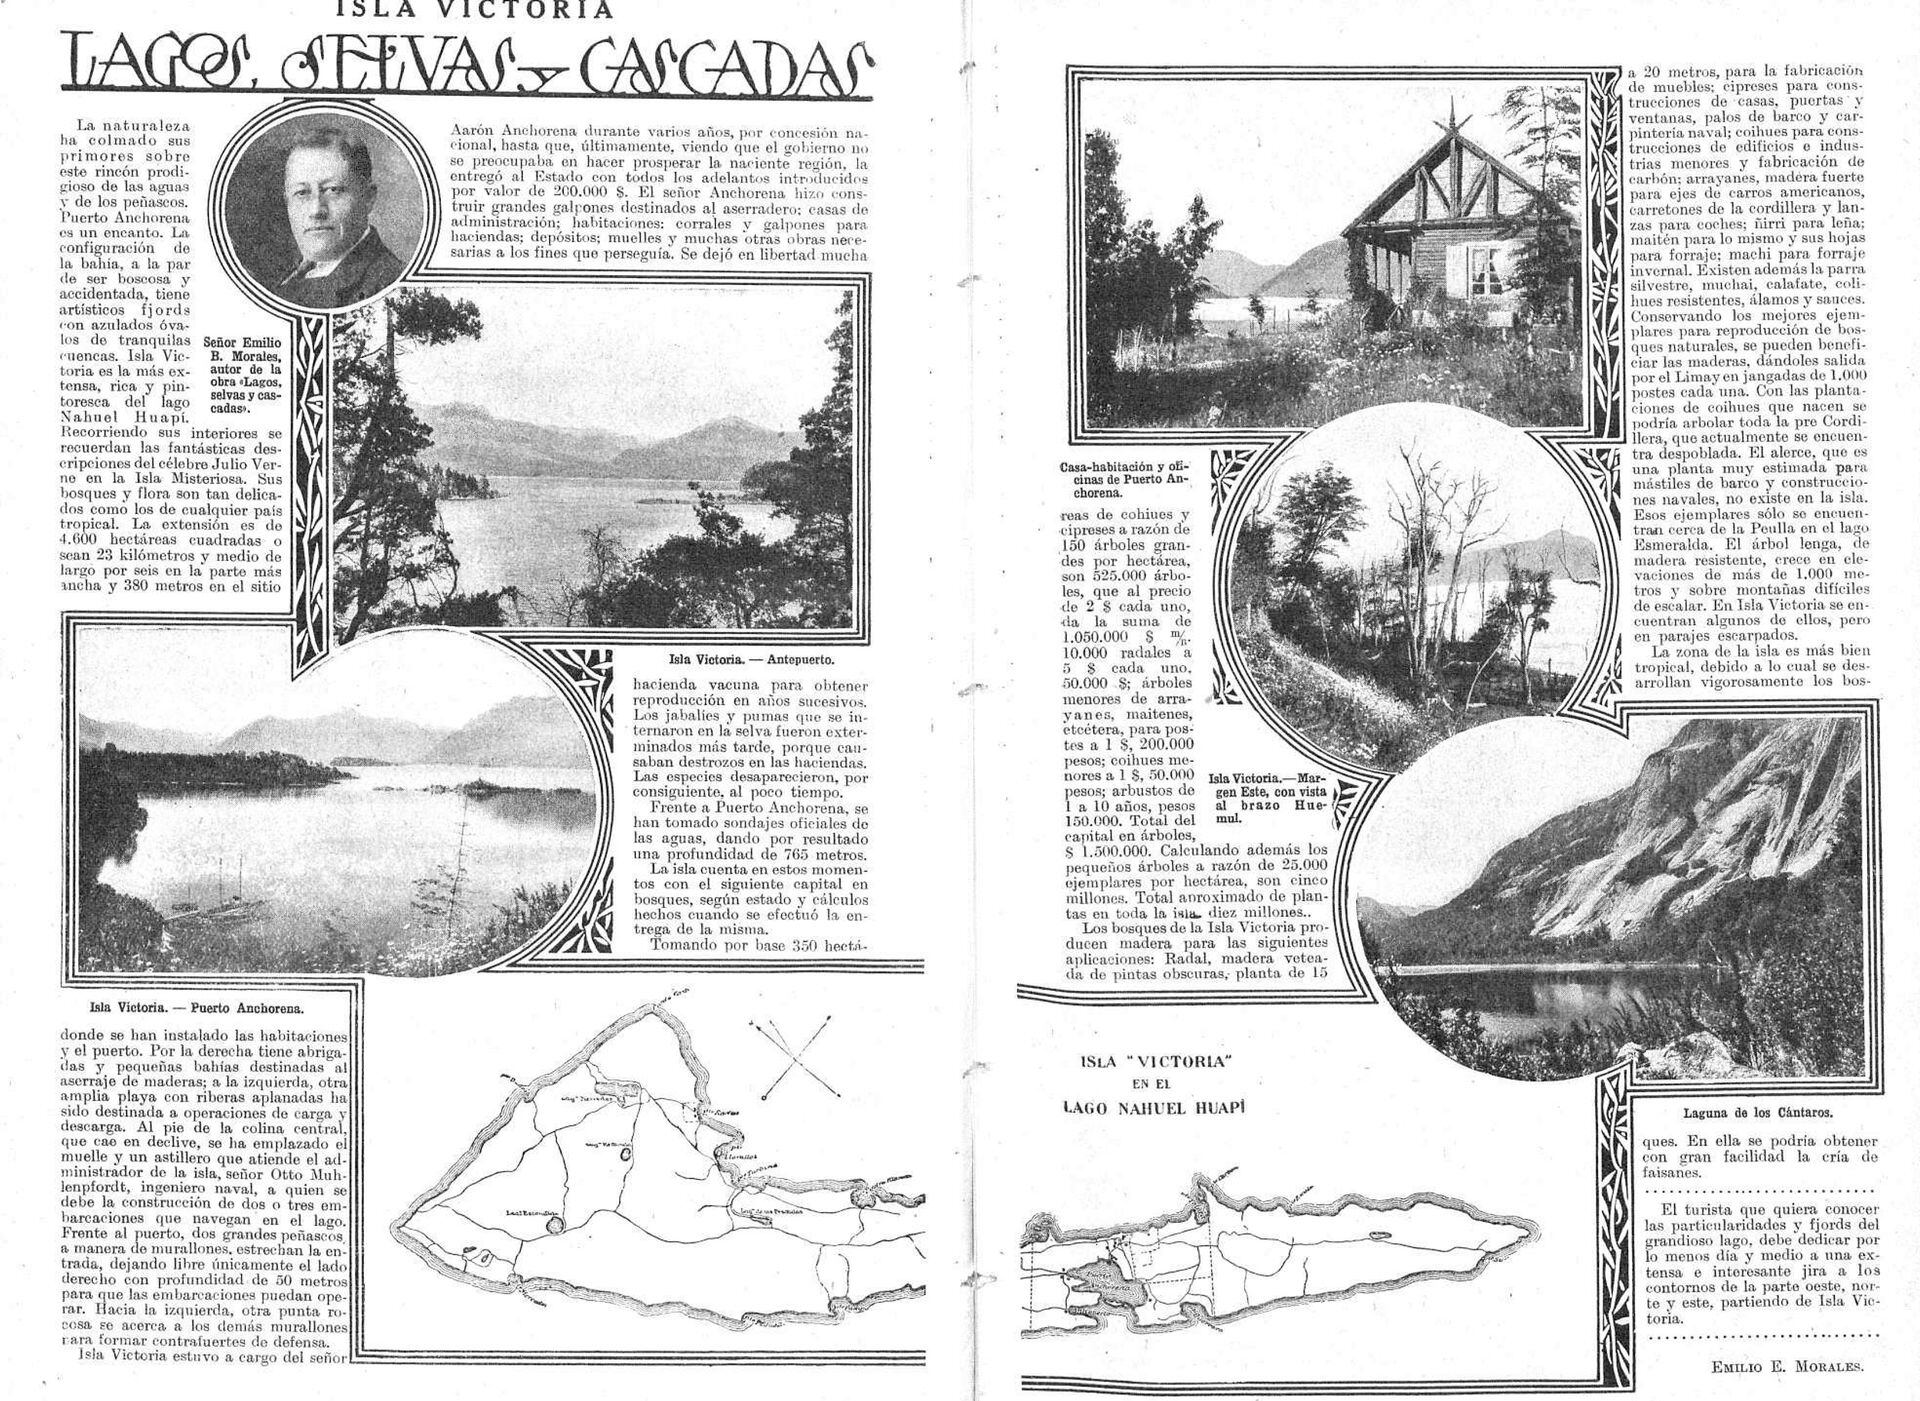 Una nota dedicada a la Isla Victoria en Caras y Caretas del 1/9/1917